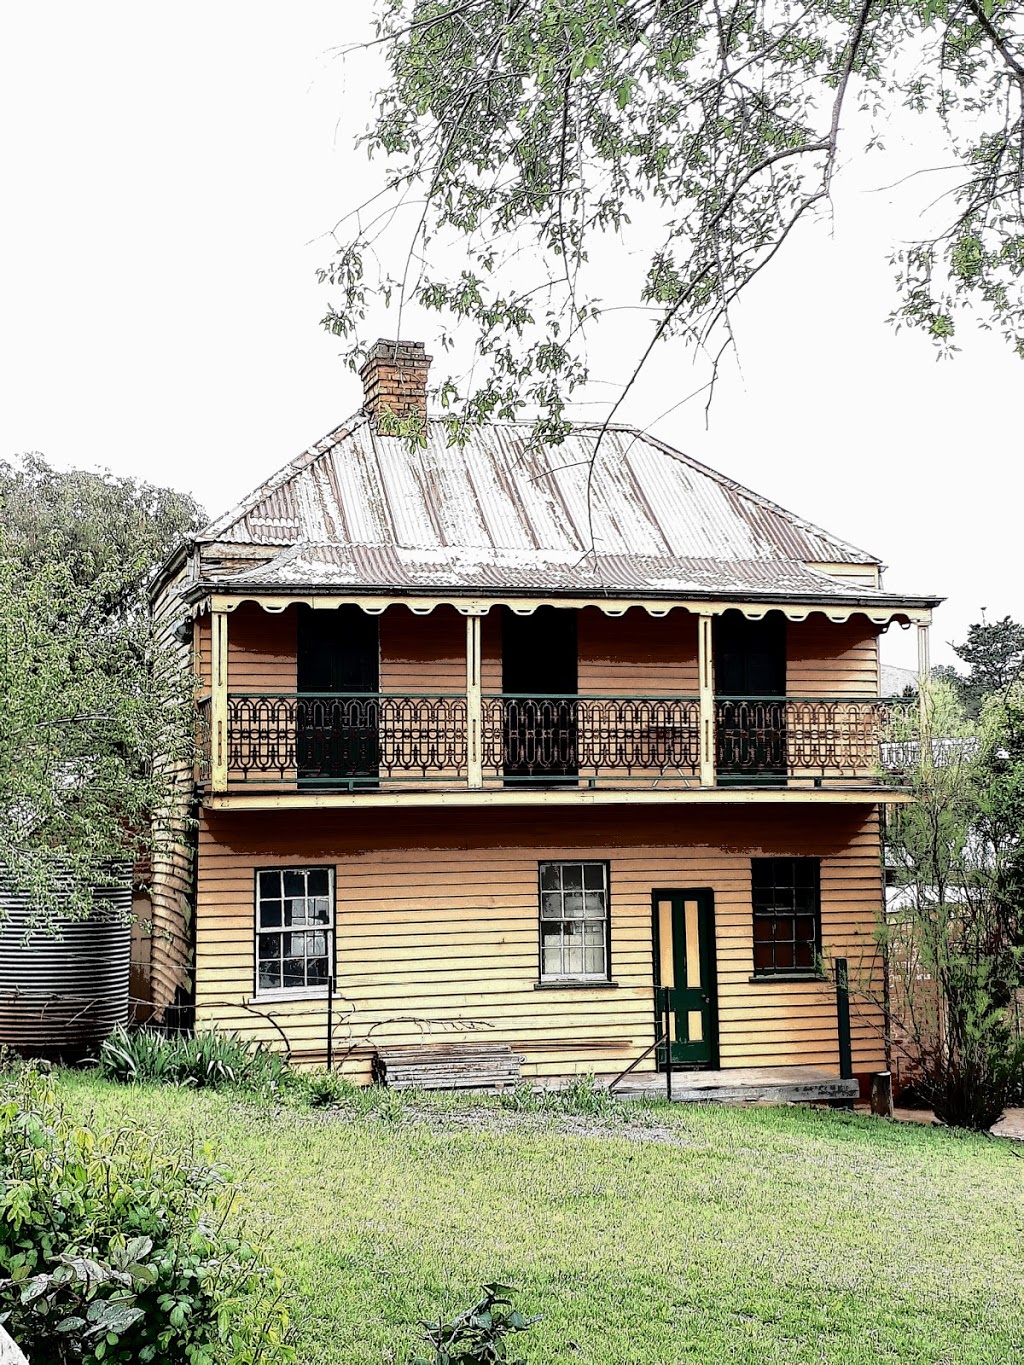 Old Sofala Gaol Cafe | Barkly St, Sofala NSW 2795, Australia | Phone: (02) 6337 7064